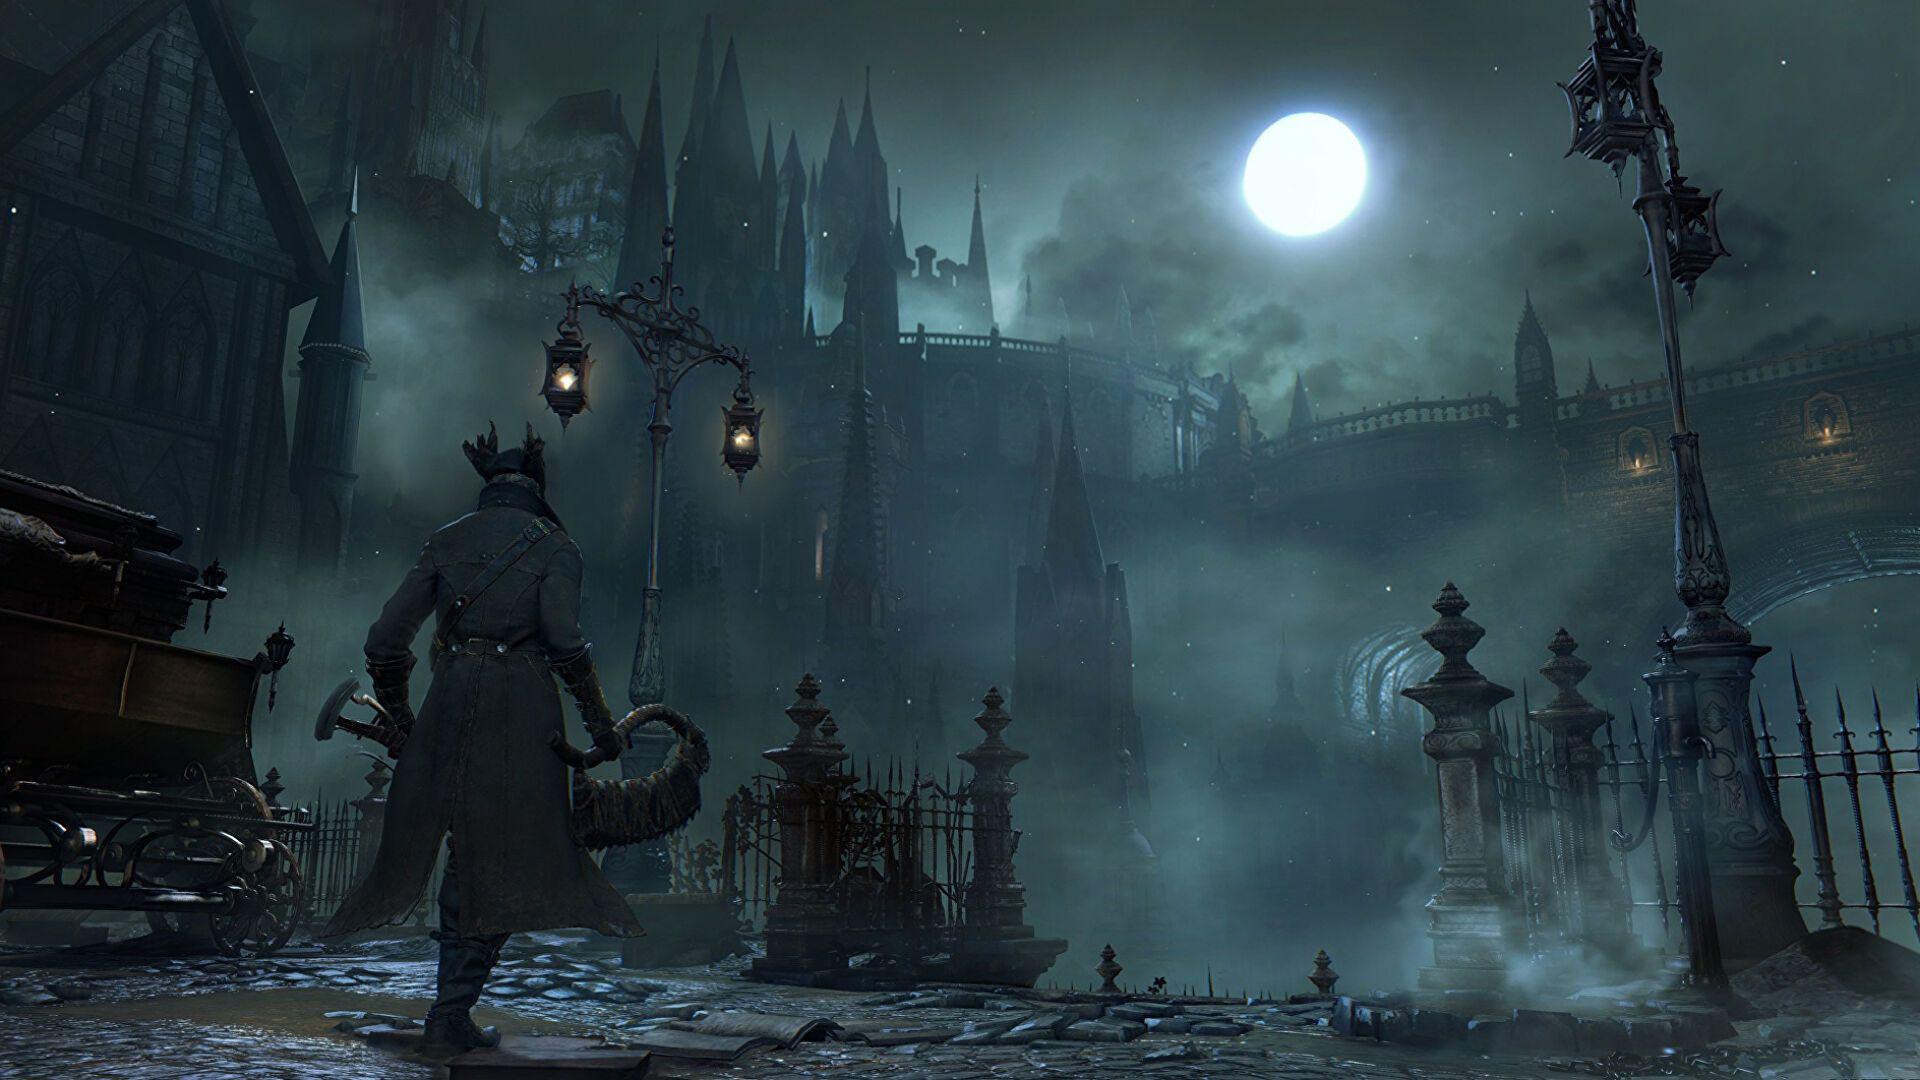 Versão para PC de Bloodborne não estava em desenvolvimento na Virtuos, esclarece estúdio